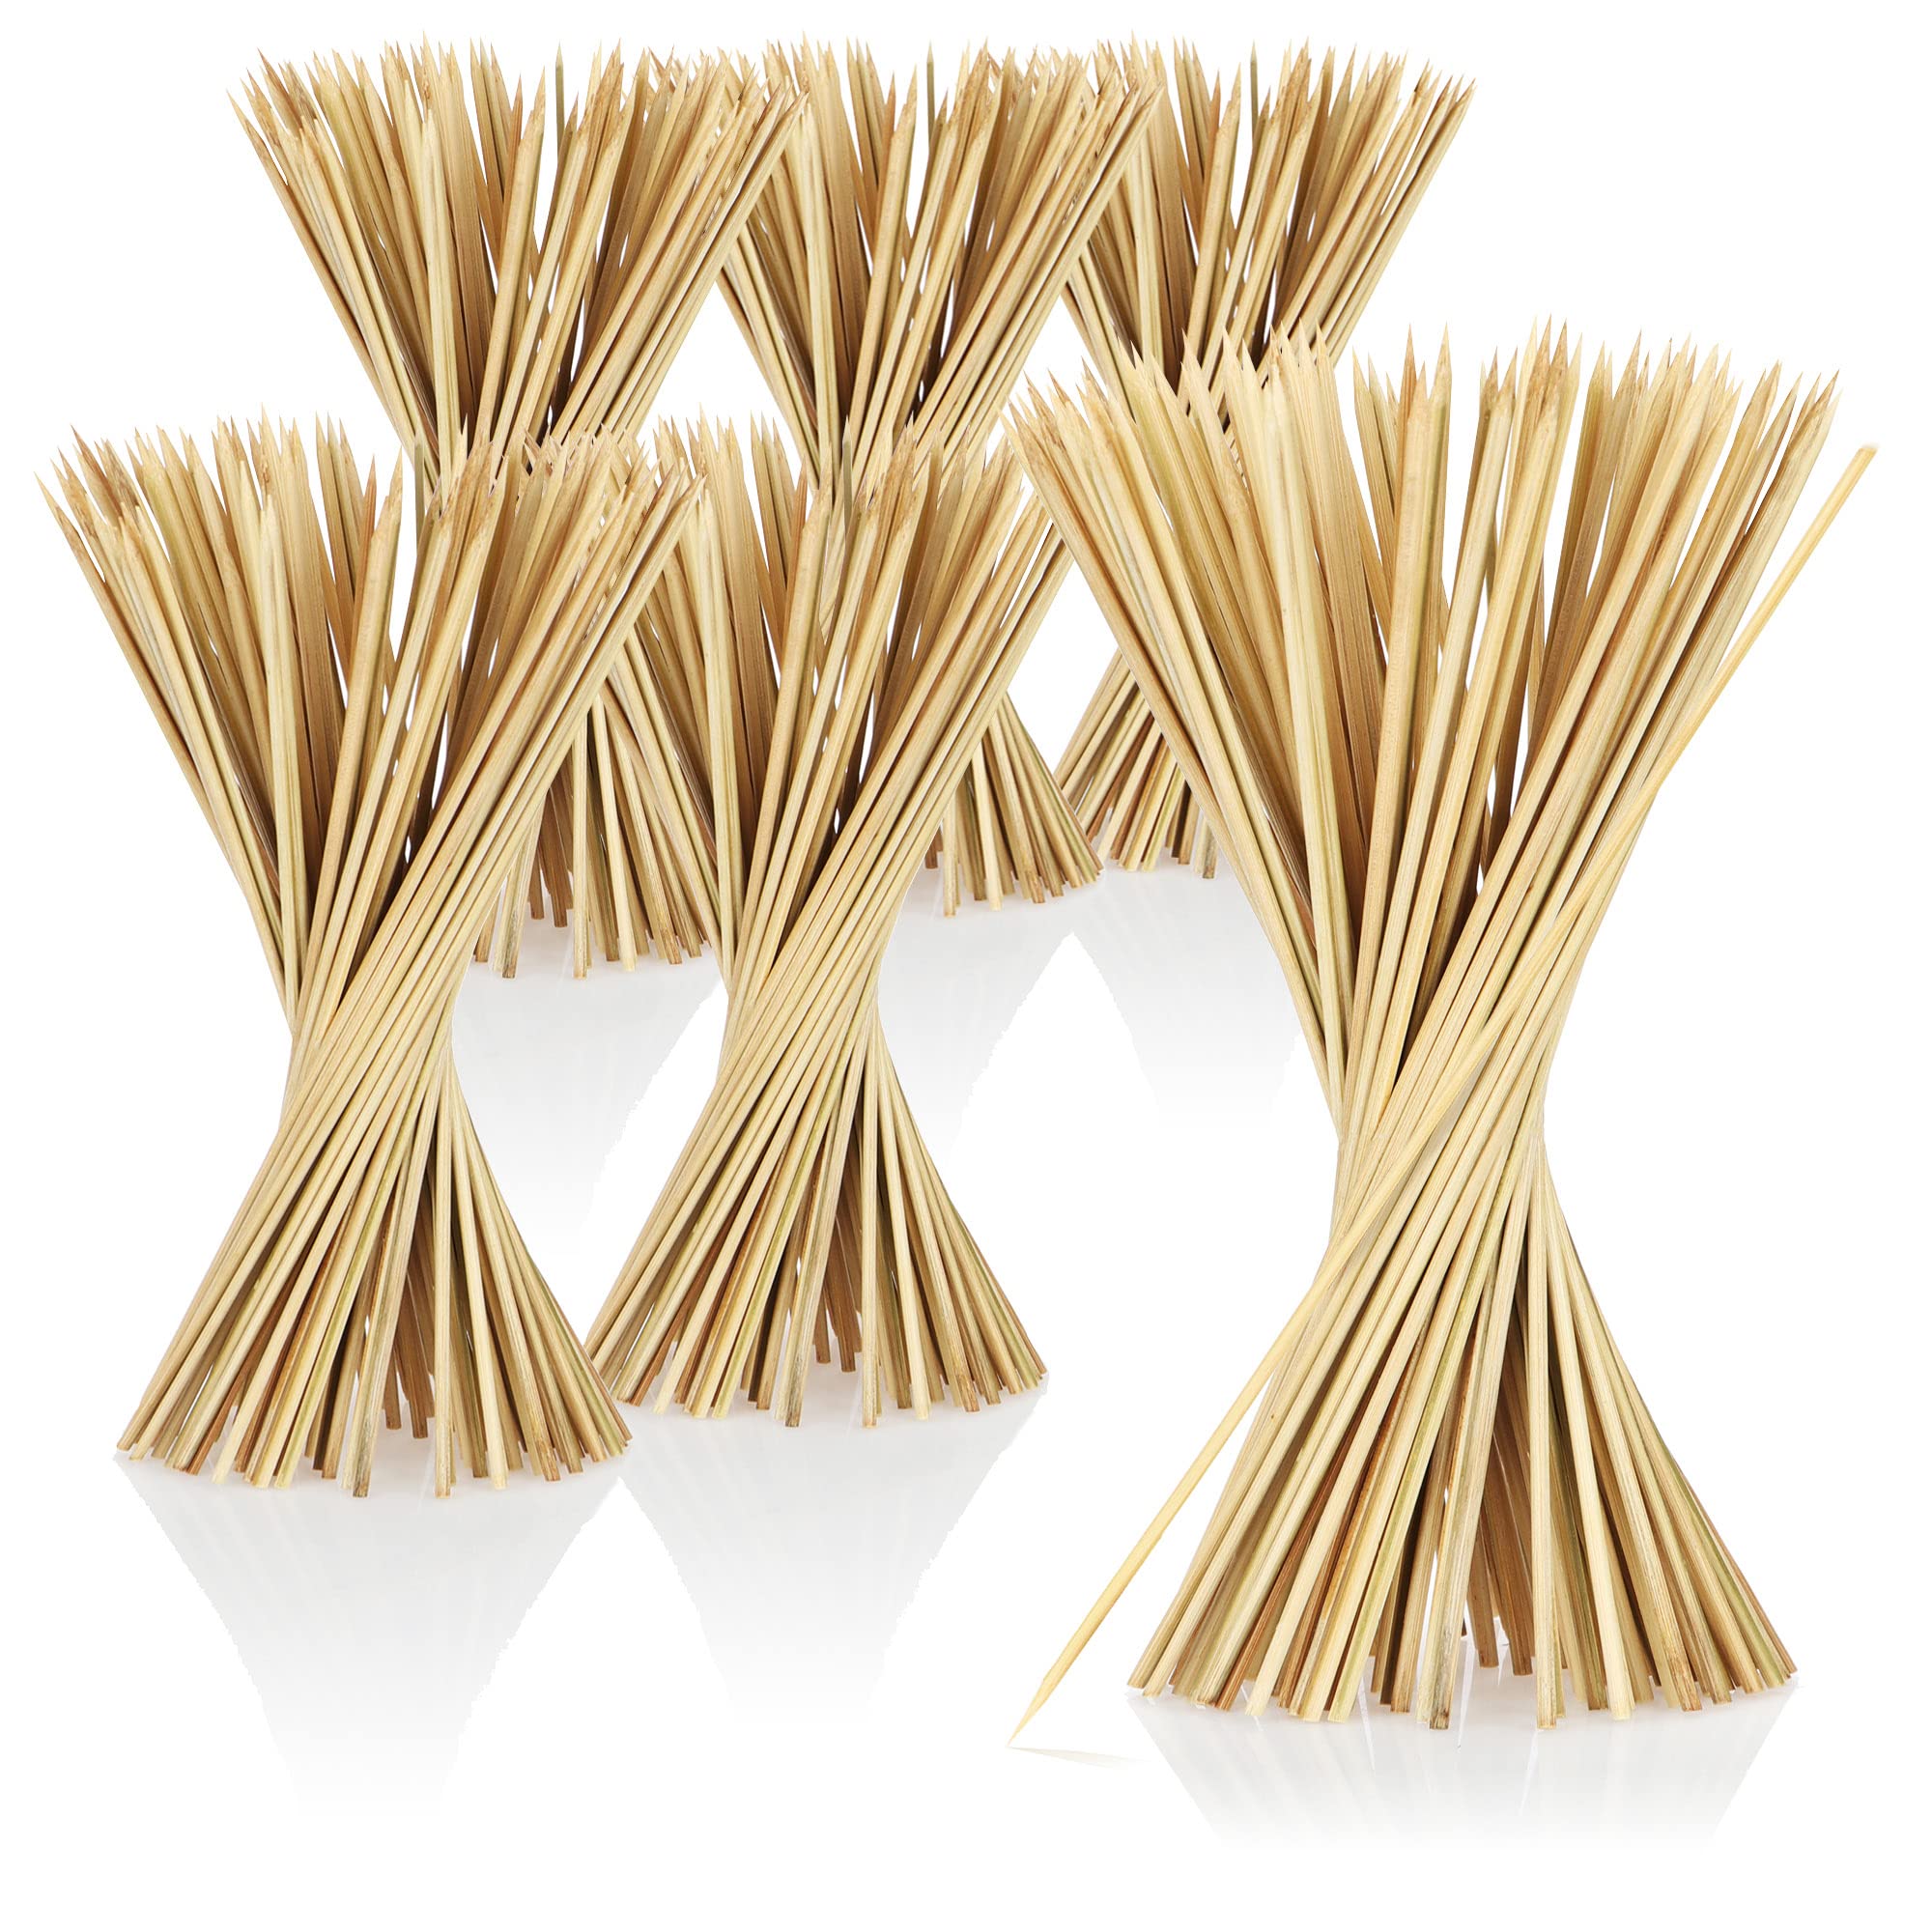 grand escompte COM-FOUR® 500x Brochettes en bois de bambou - brochettes de 20 cm de long - brochettes de légumes dans un set (0500 pièces - 20cm) xLdyhhdgG Boutique